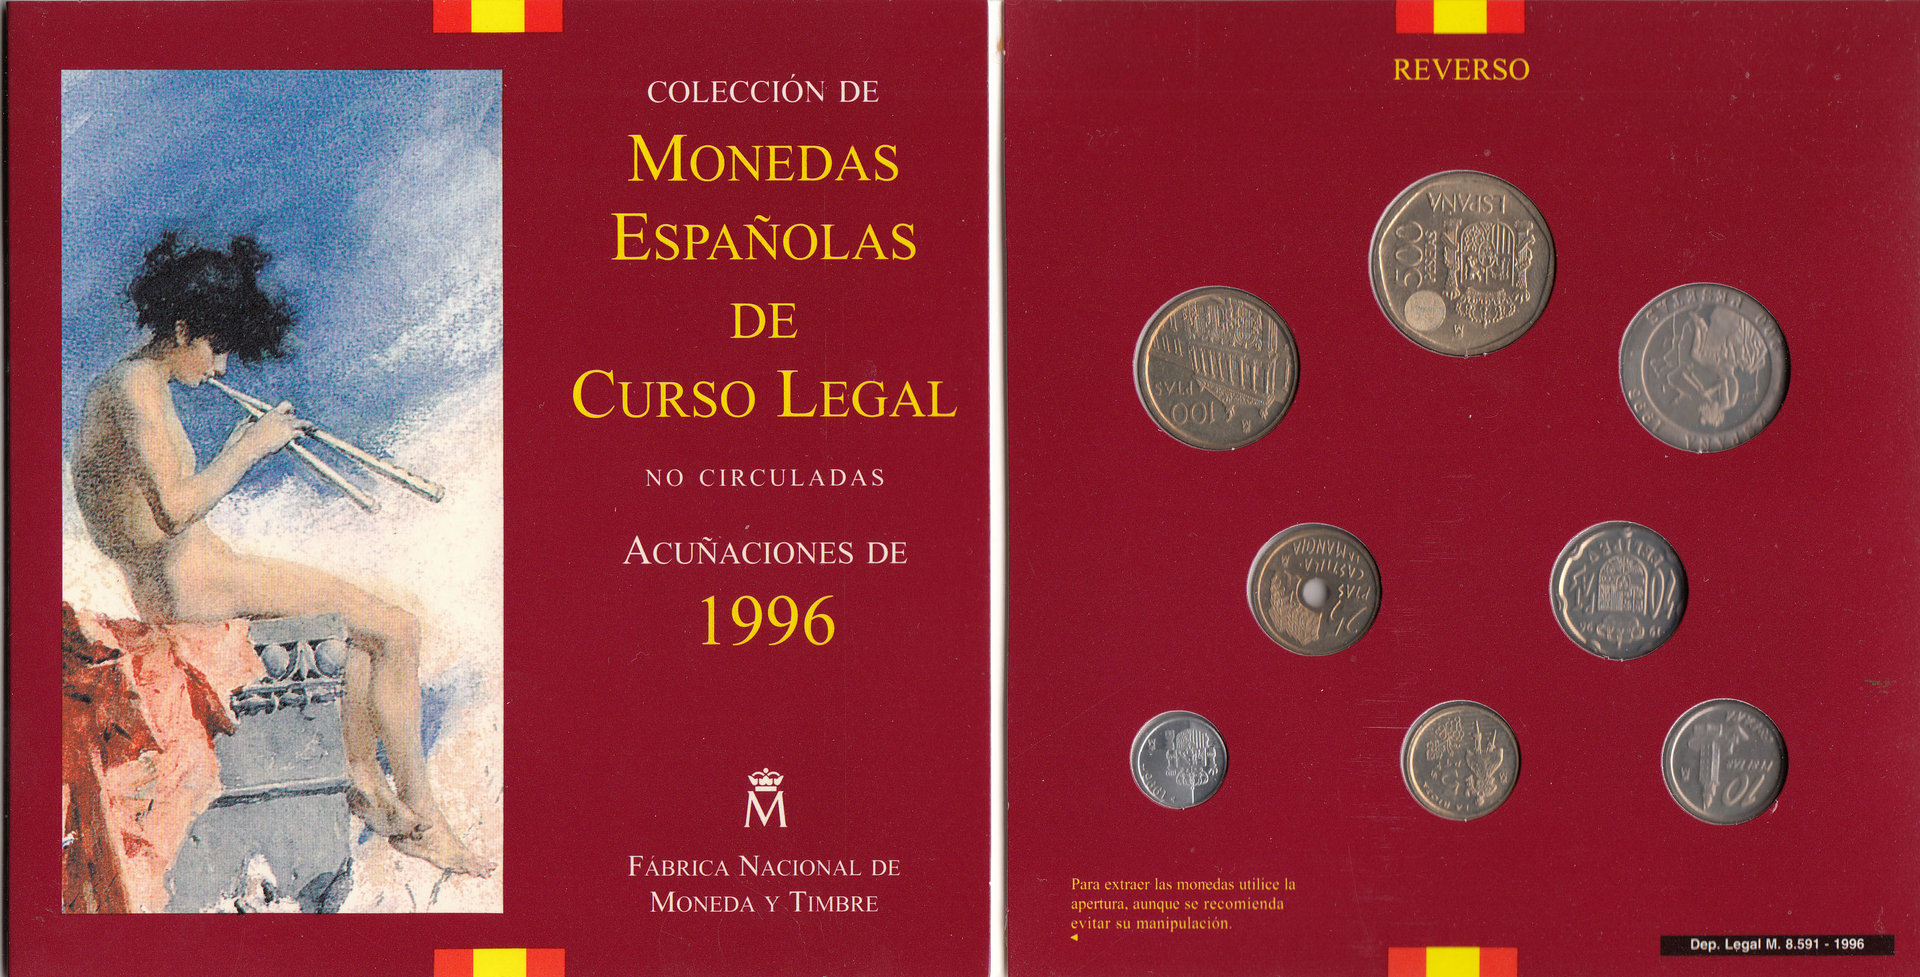 COLECCION DE MONEDAS ESPAÑOLAS DE CURSO LEGAL. ACUÑACIONES DE 1996.